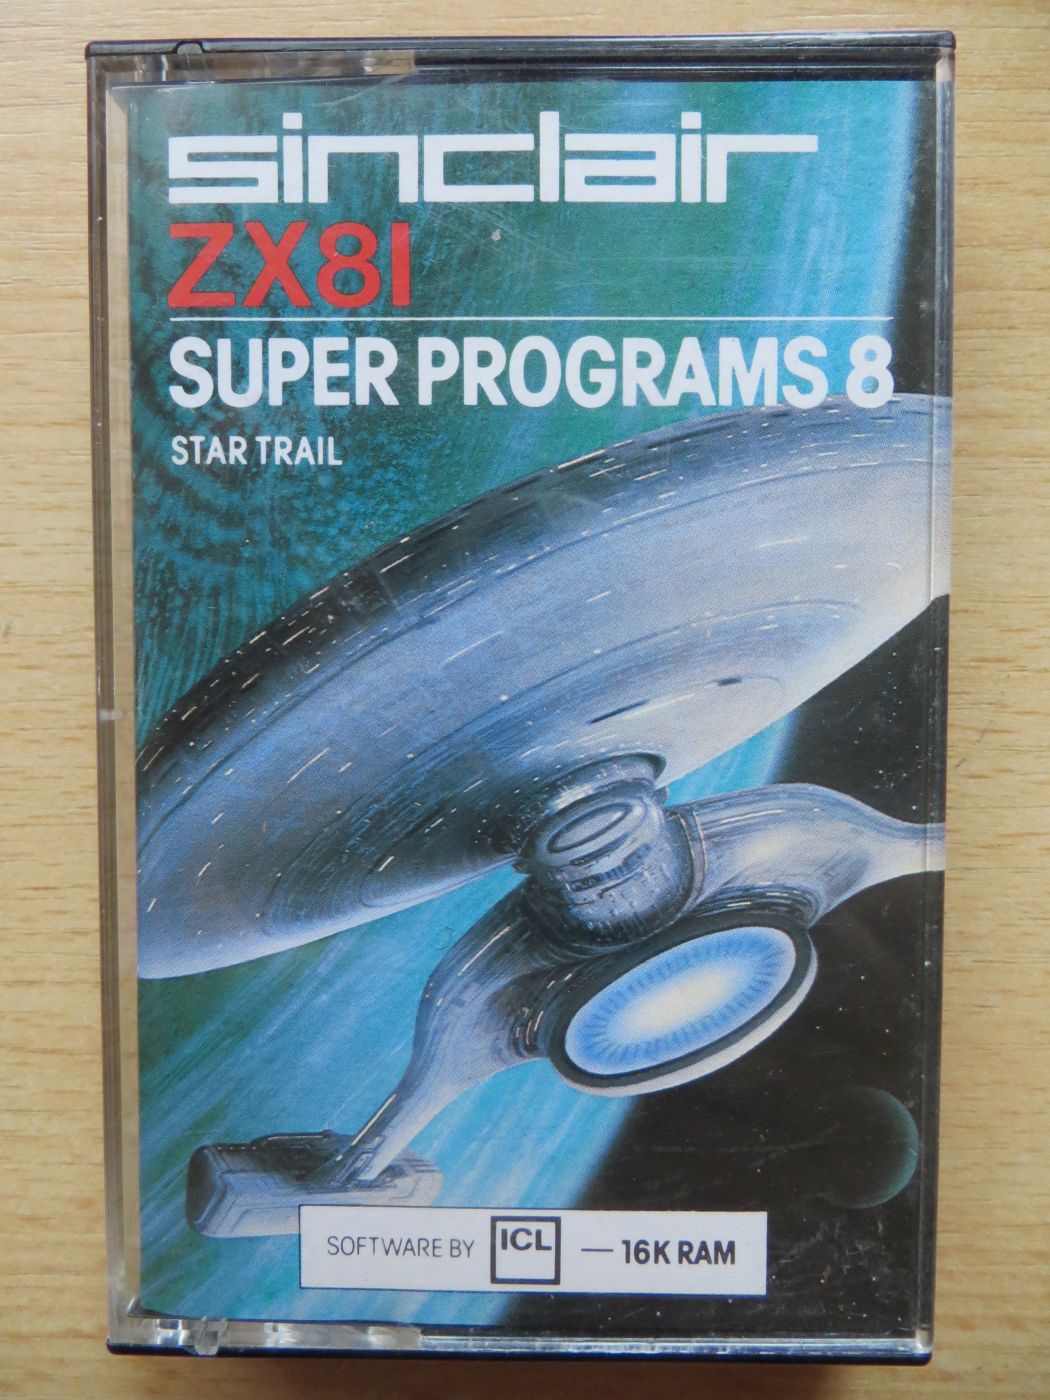 Super Programs 8